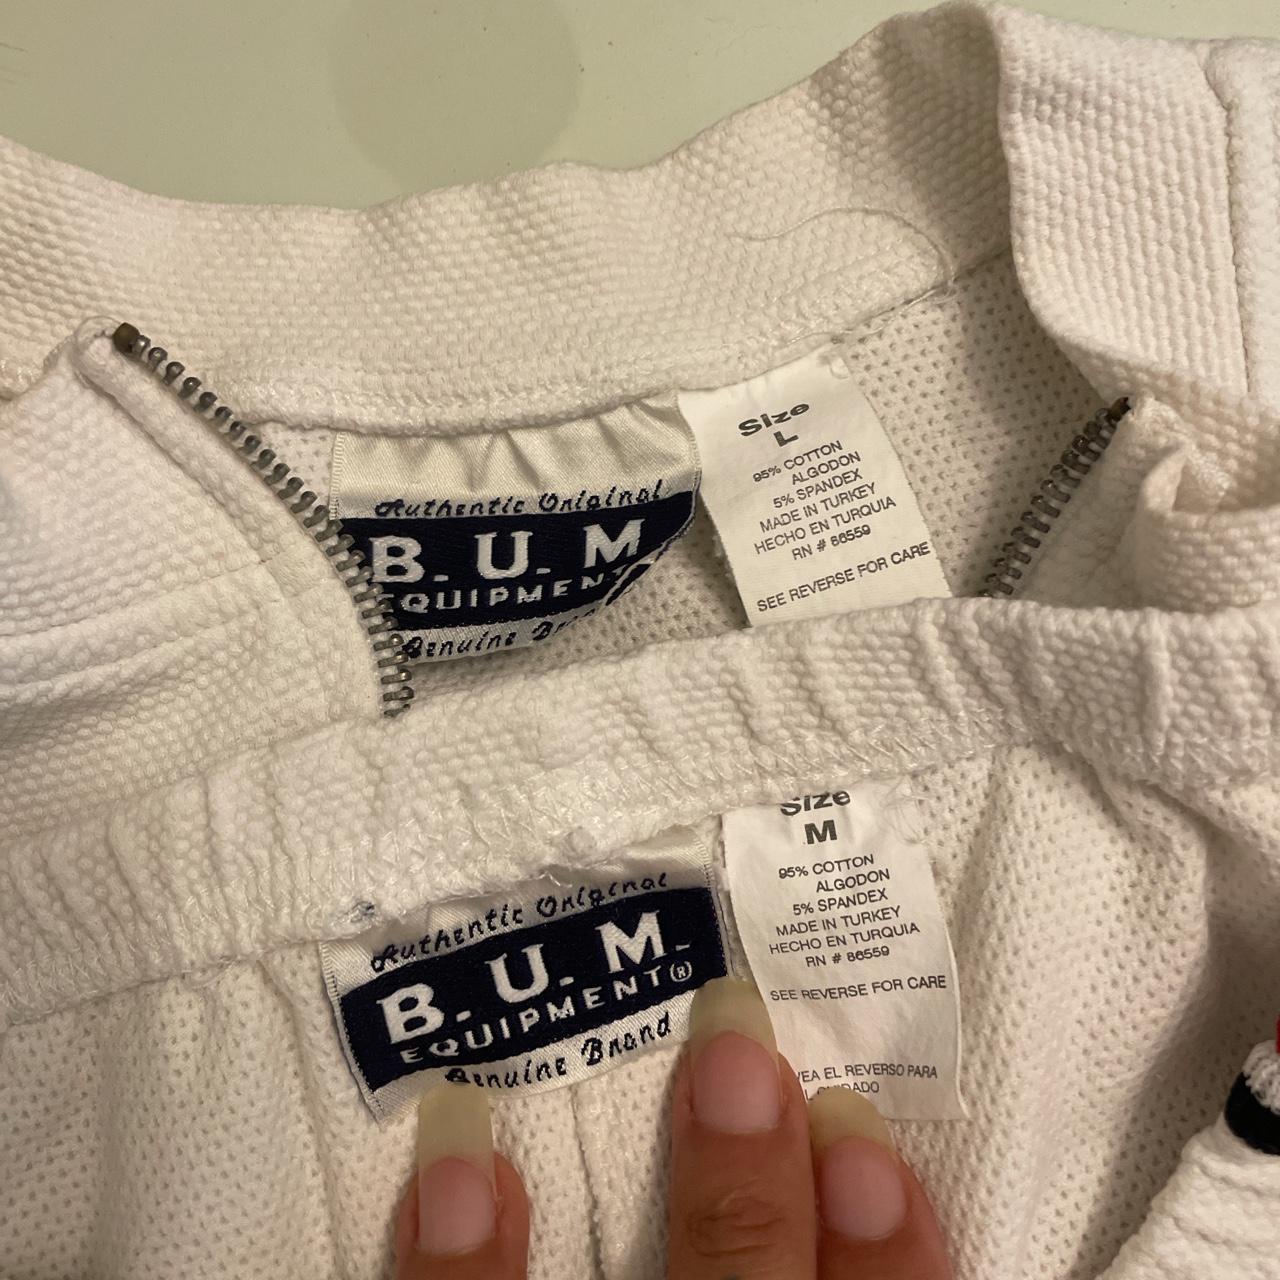 B.U.M. Equipment Women's White and Navy Suit (4)